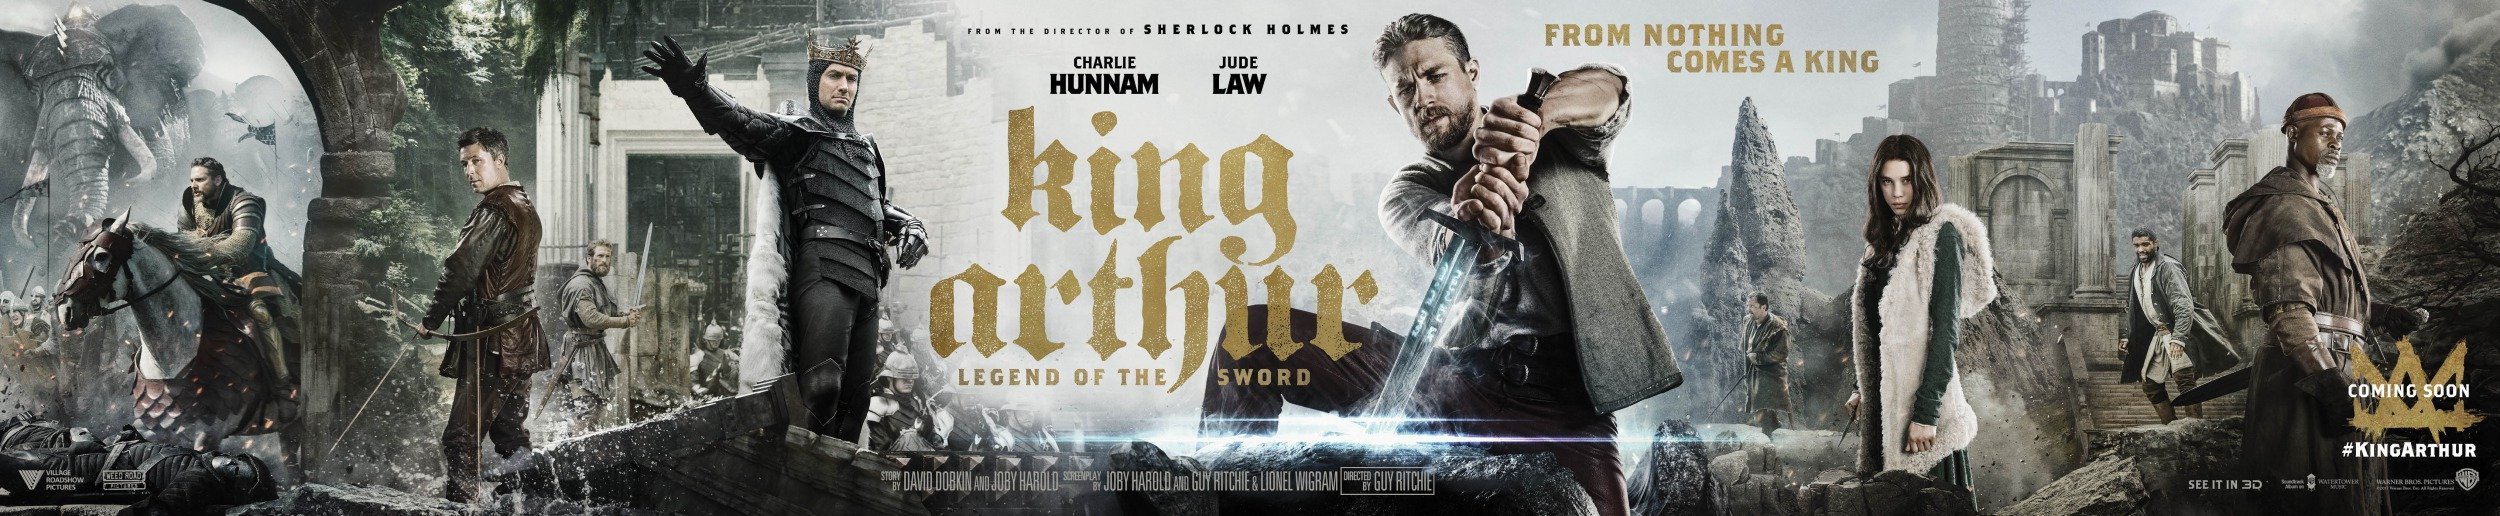 Bannière du film Le Roi Arthur: La Légende d’Excalibur